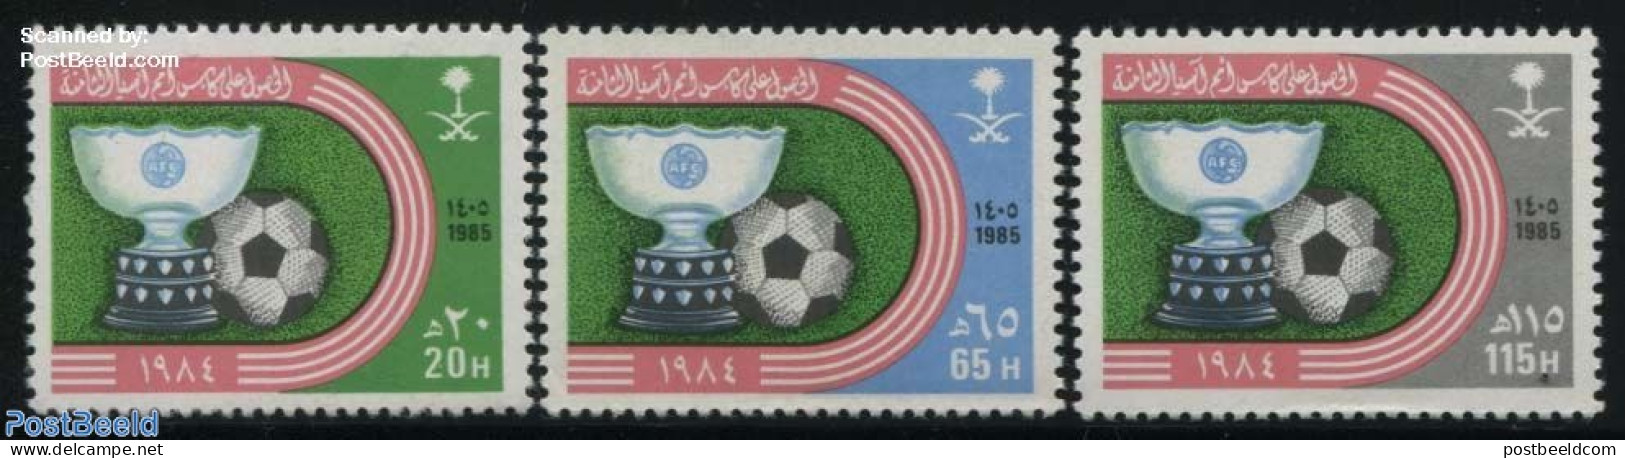 Saudi Arabia 1985 Asian Football Champion 3v, Mint NH, Sport - Football - Saudi Arabia